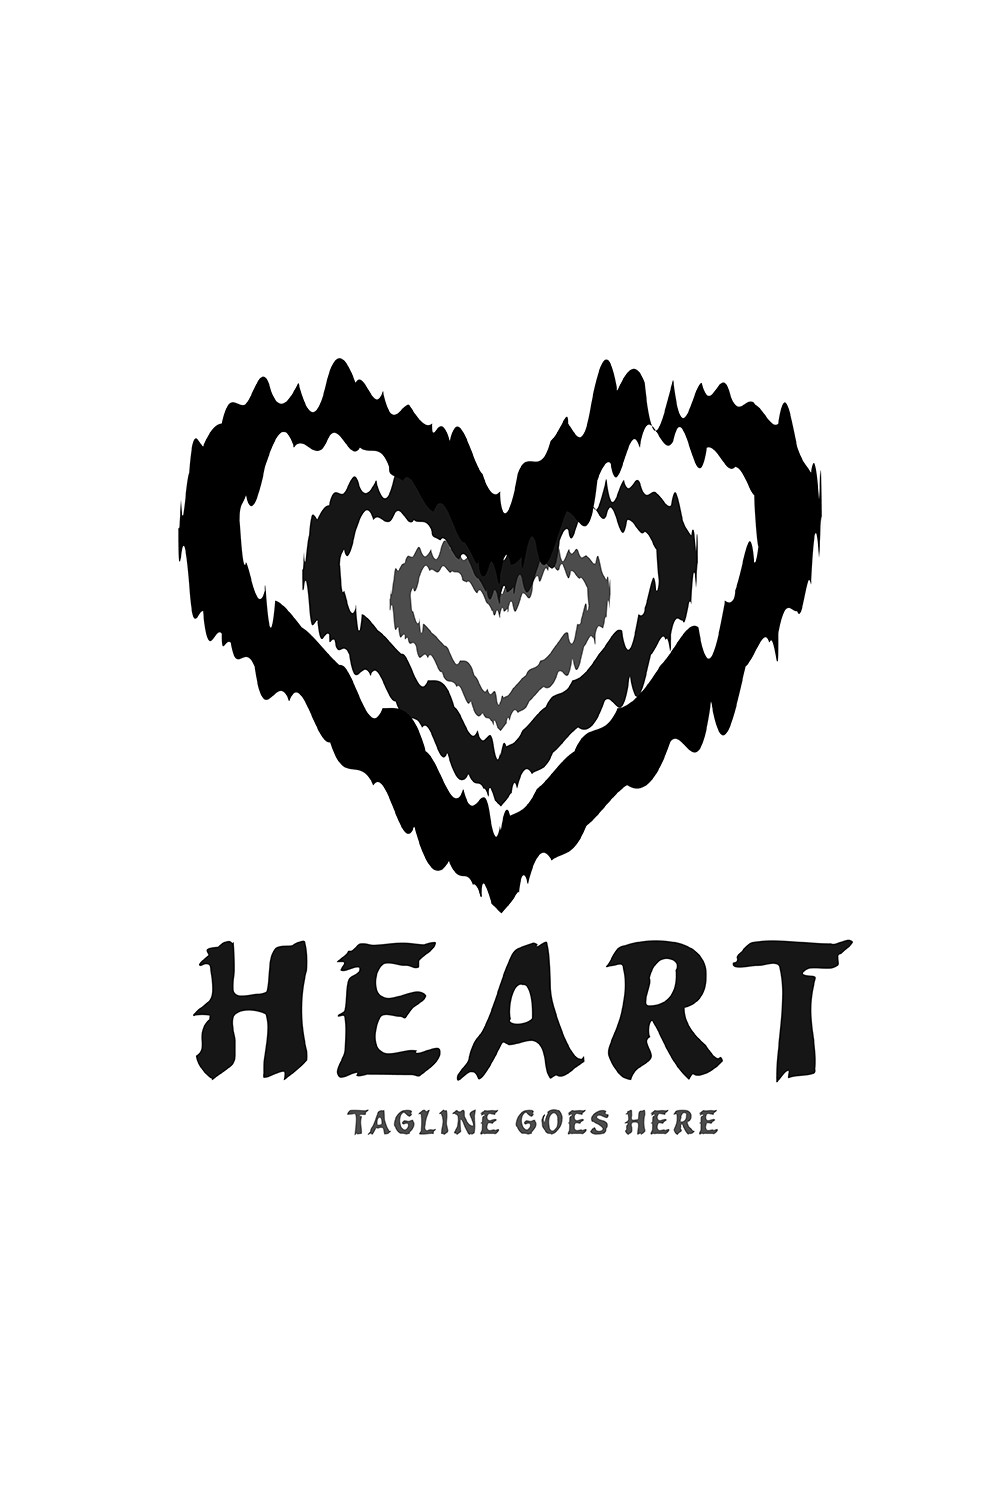 Black Heart Logo Design pinterest image.